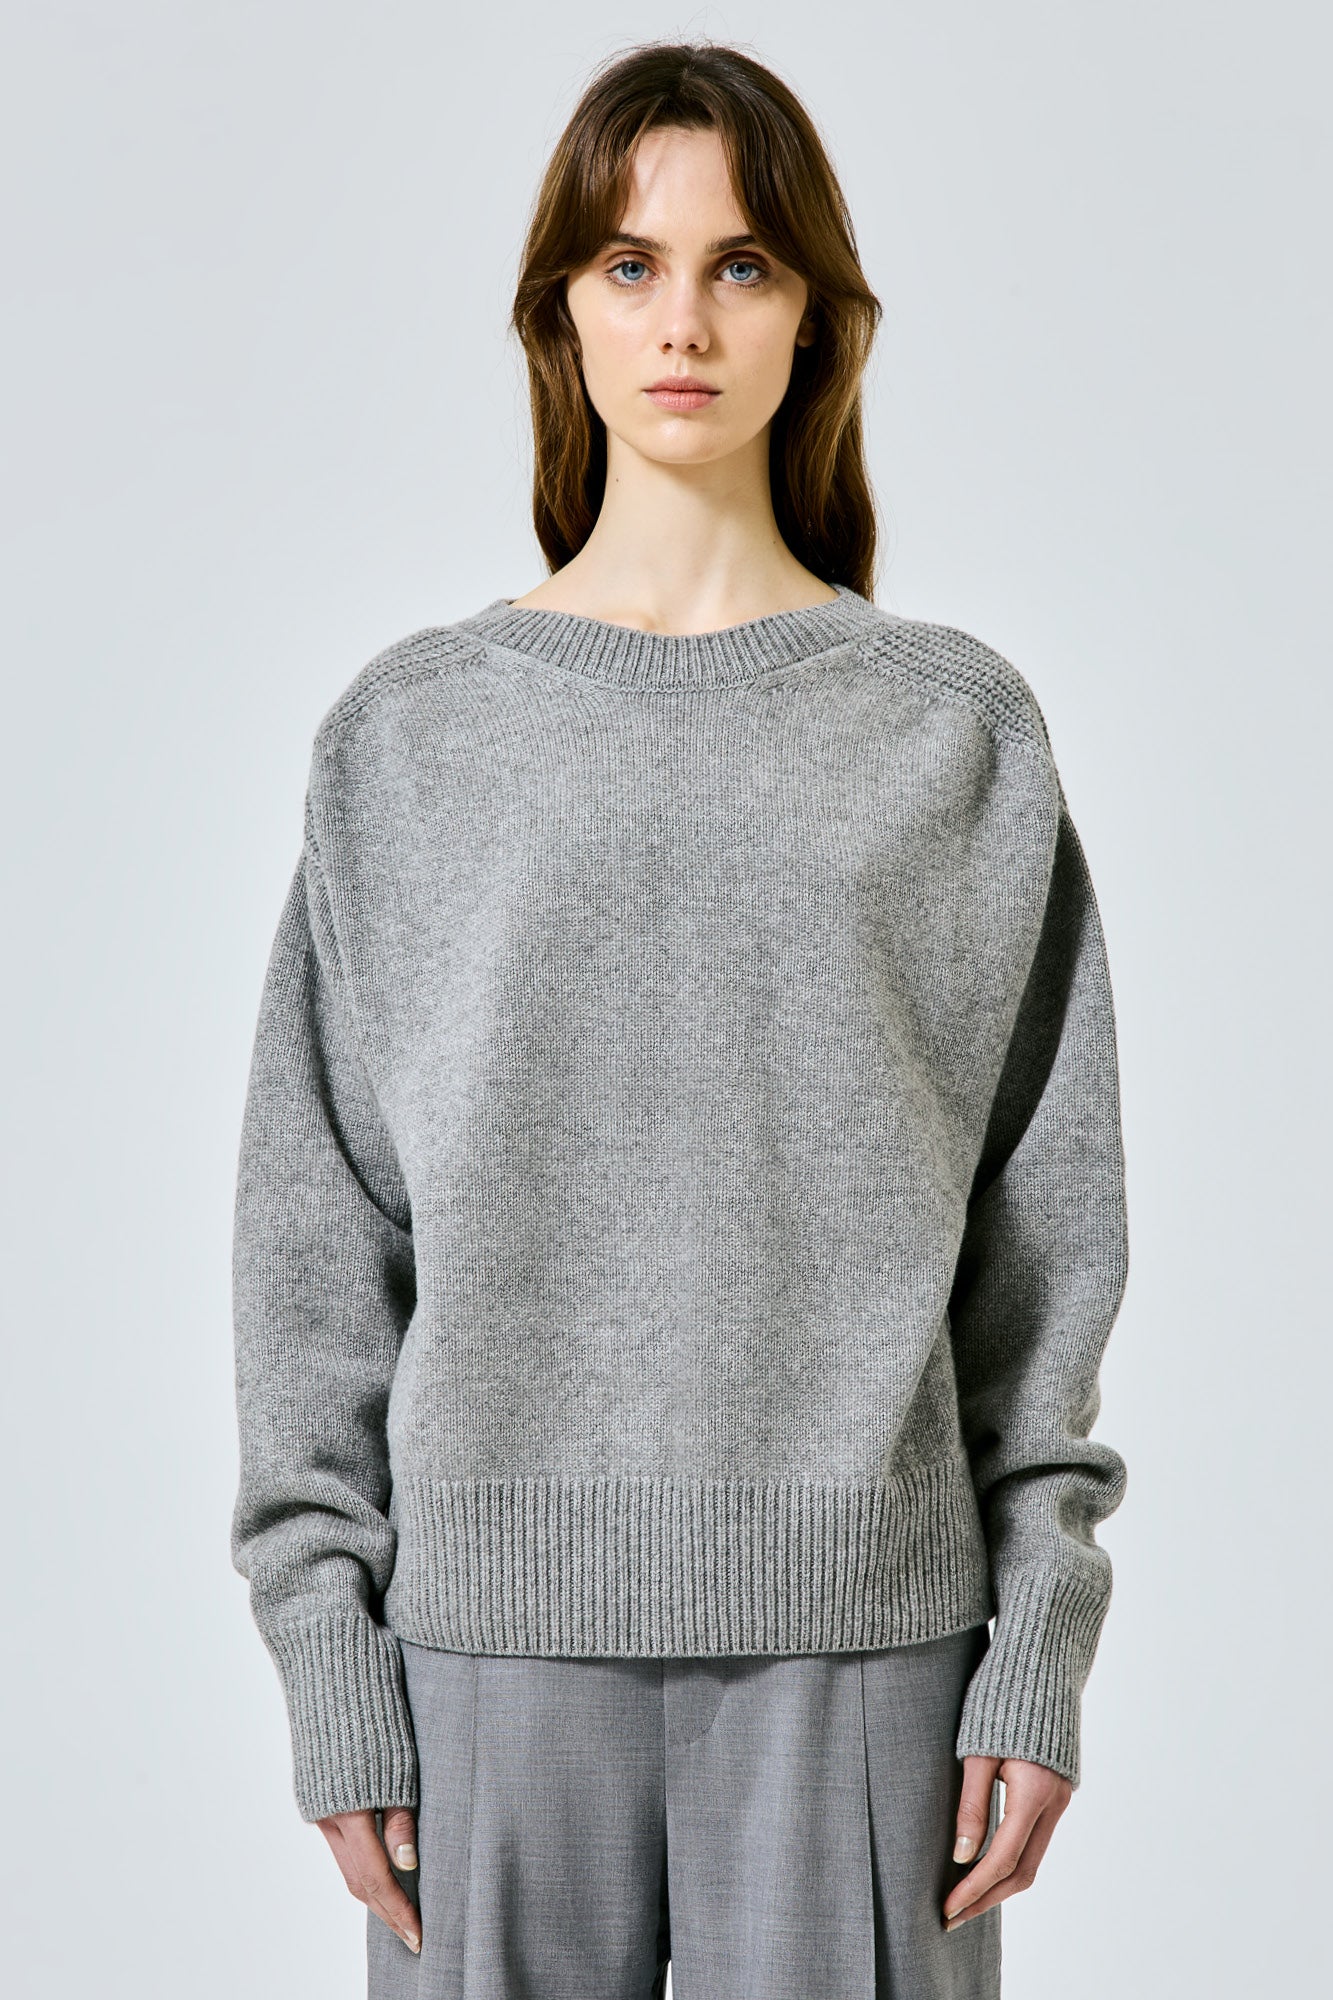 Round neck cashmere sweater